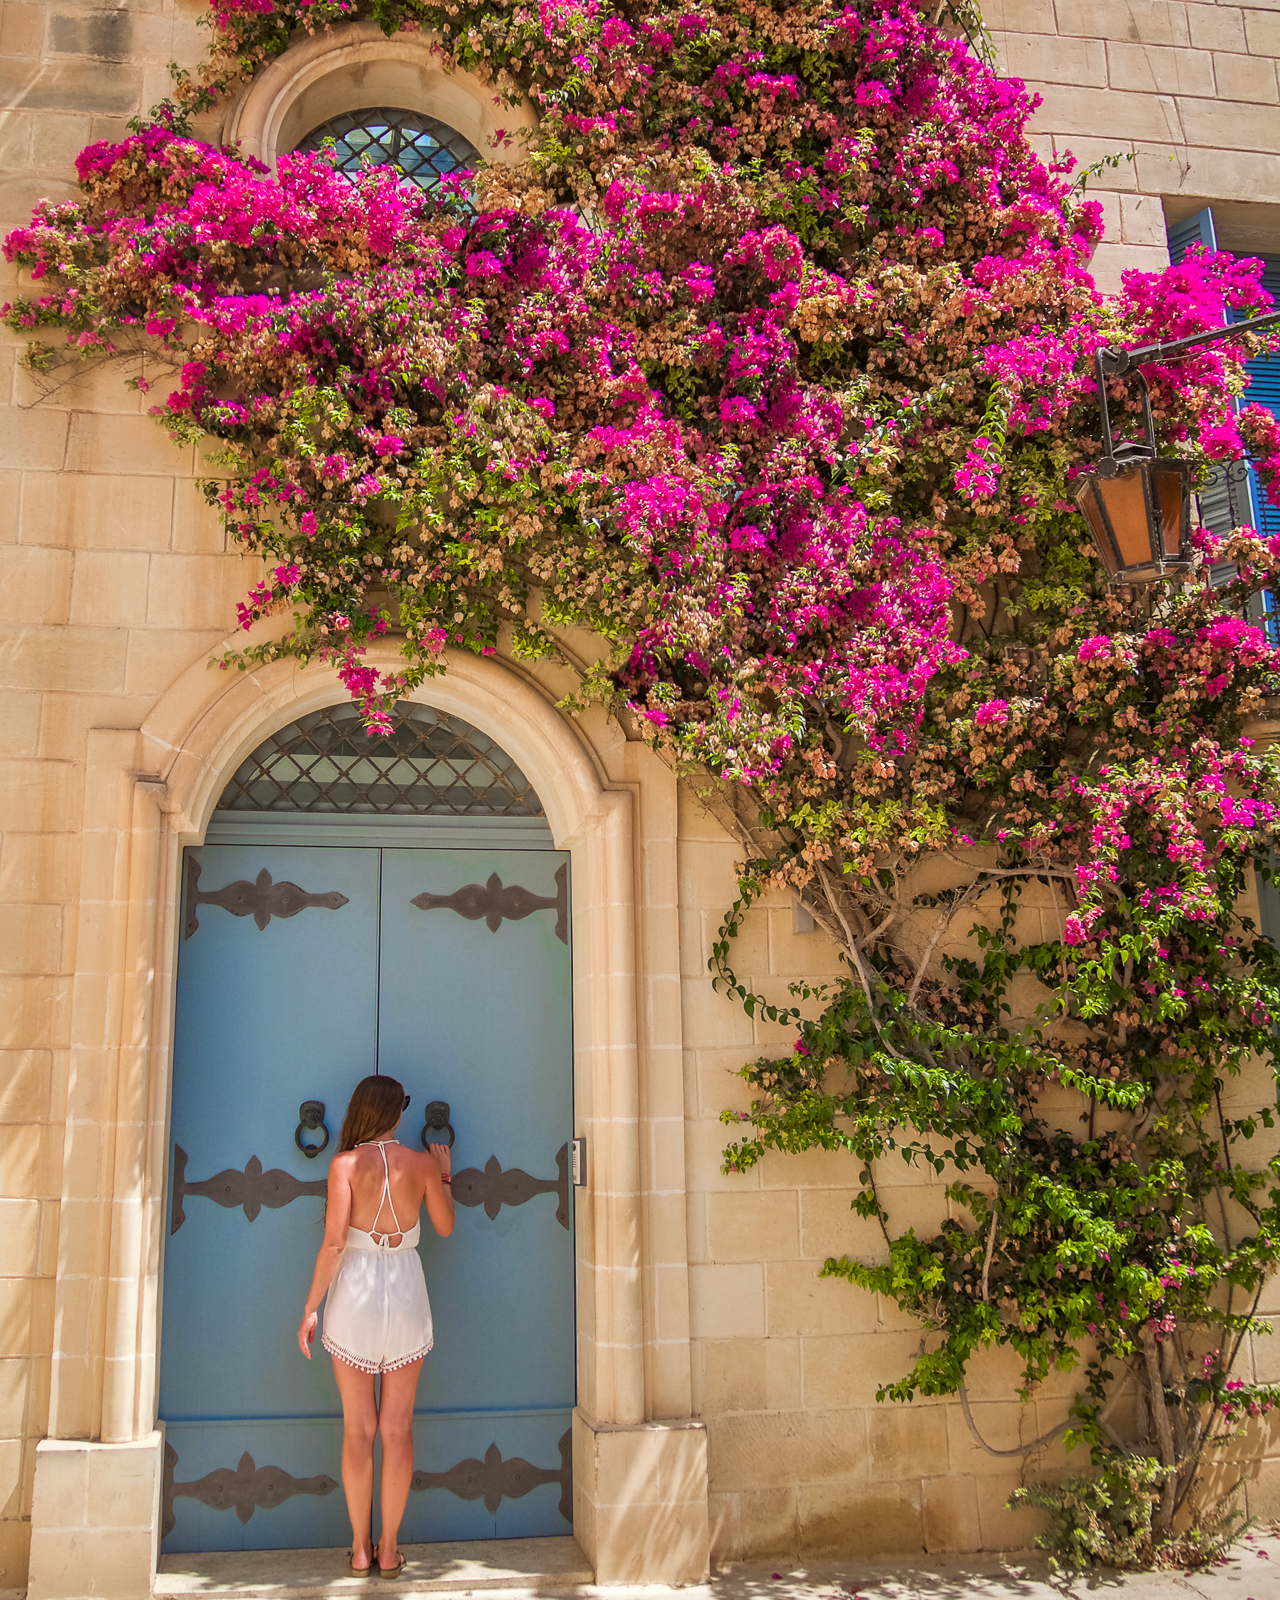 Flower door in Mdina, Malta